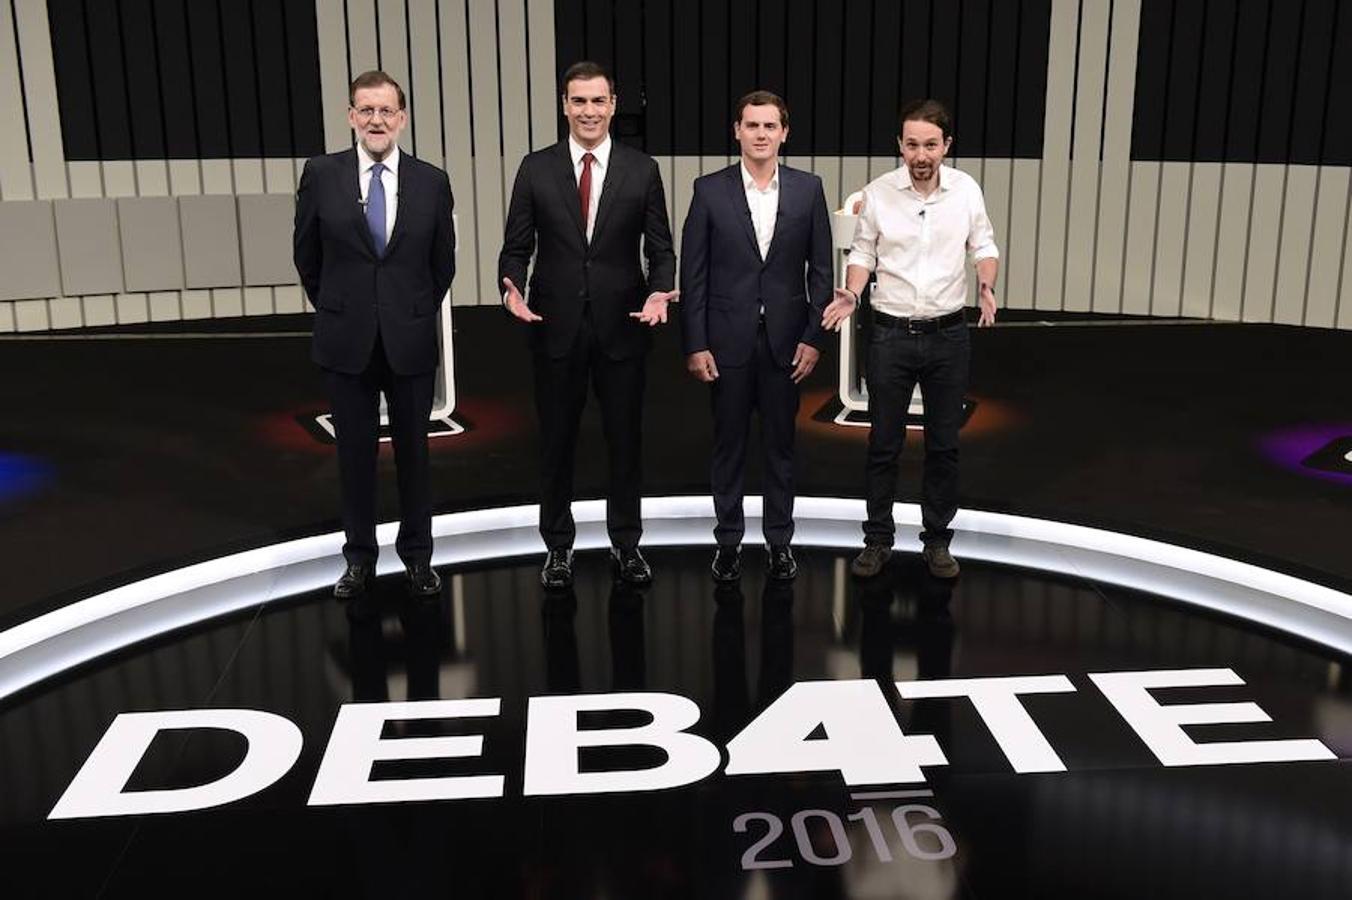 Los cuatro candidatos a la presidencia, momentos antes del comienzo del debate